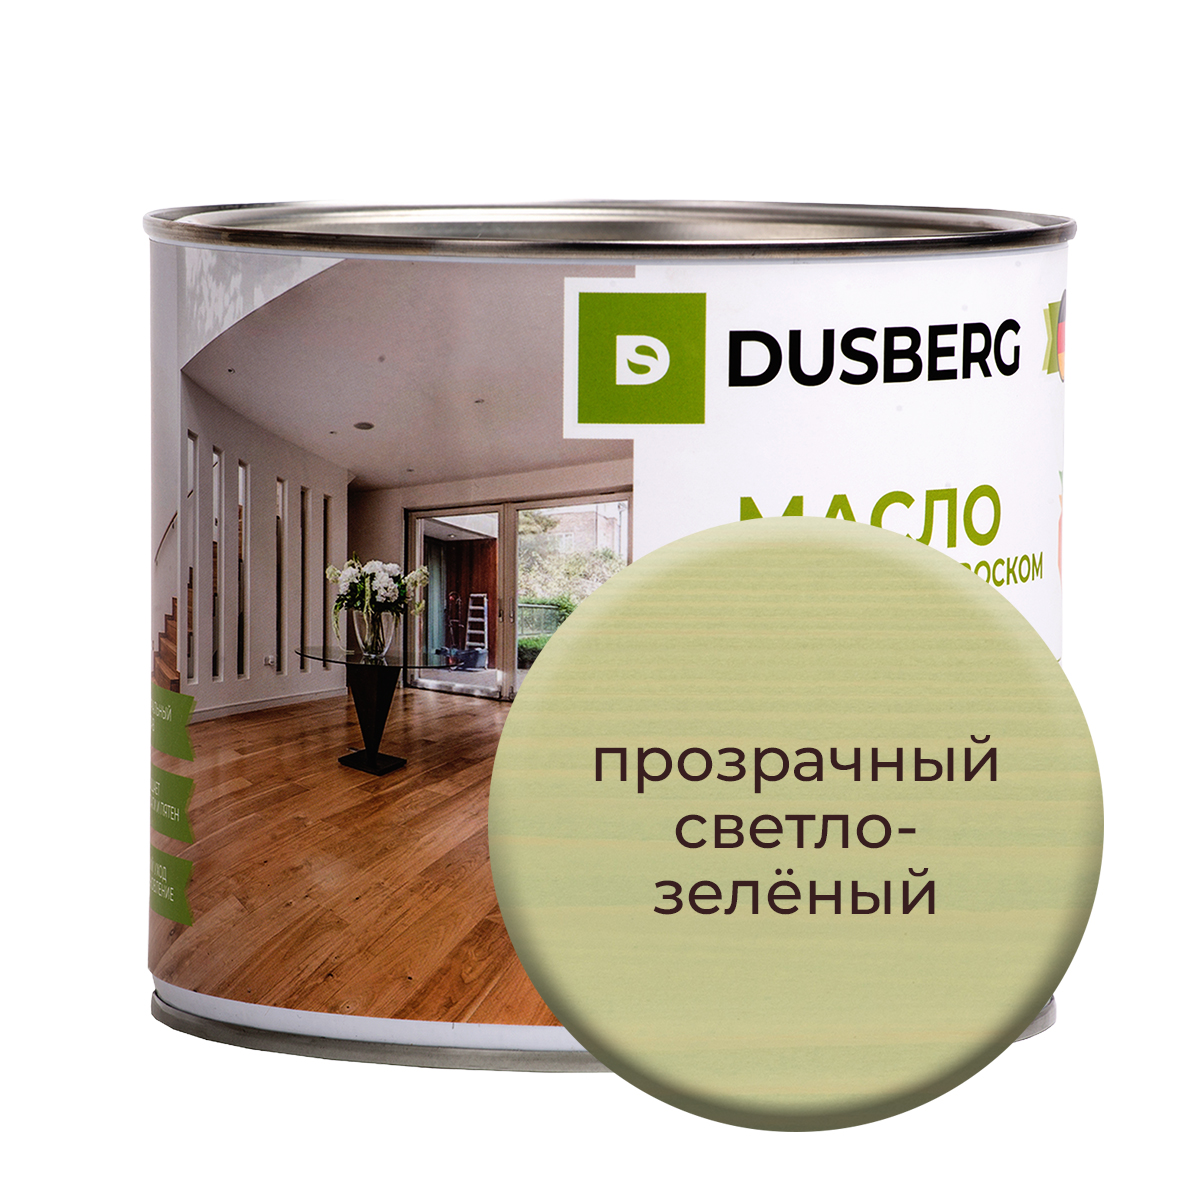 Масло Dusberg с твердым воском на бесцветной основе, 2 л Прозрачный светло-зеленый масло воск для террасной доски brite flexx бес ное банка 0 75 л 212475